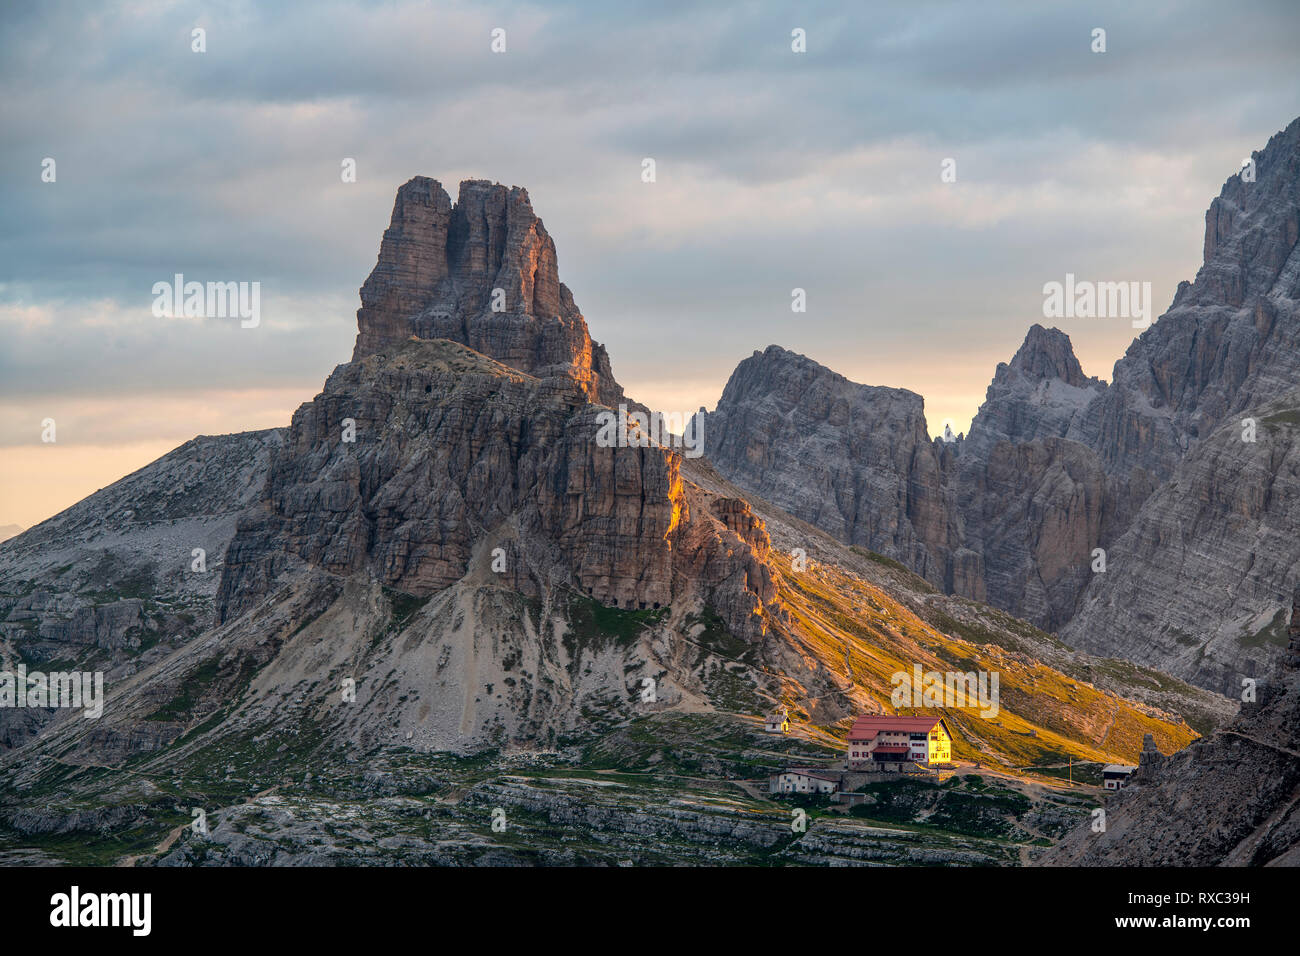 Cadini di Misurina, Sextener Range, Dolomites, Belluno, Northern Italy (Rifugio Lavradeo in the foreground) Stock Photo